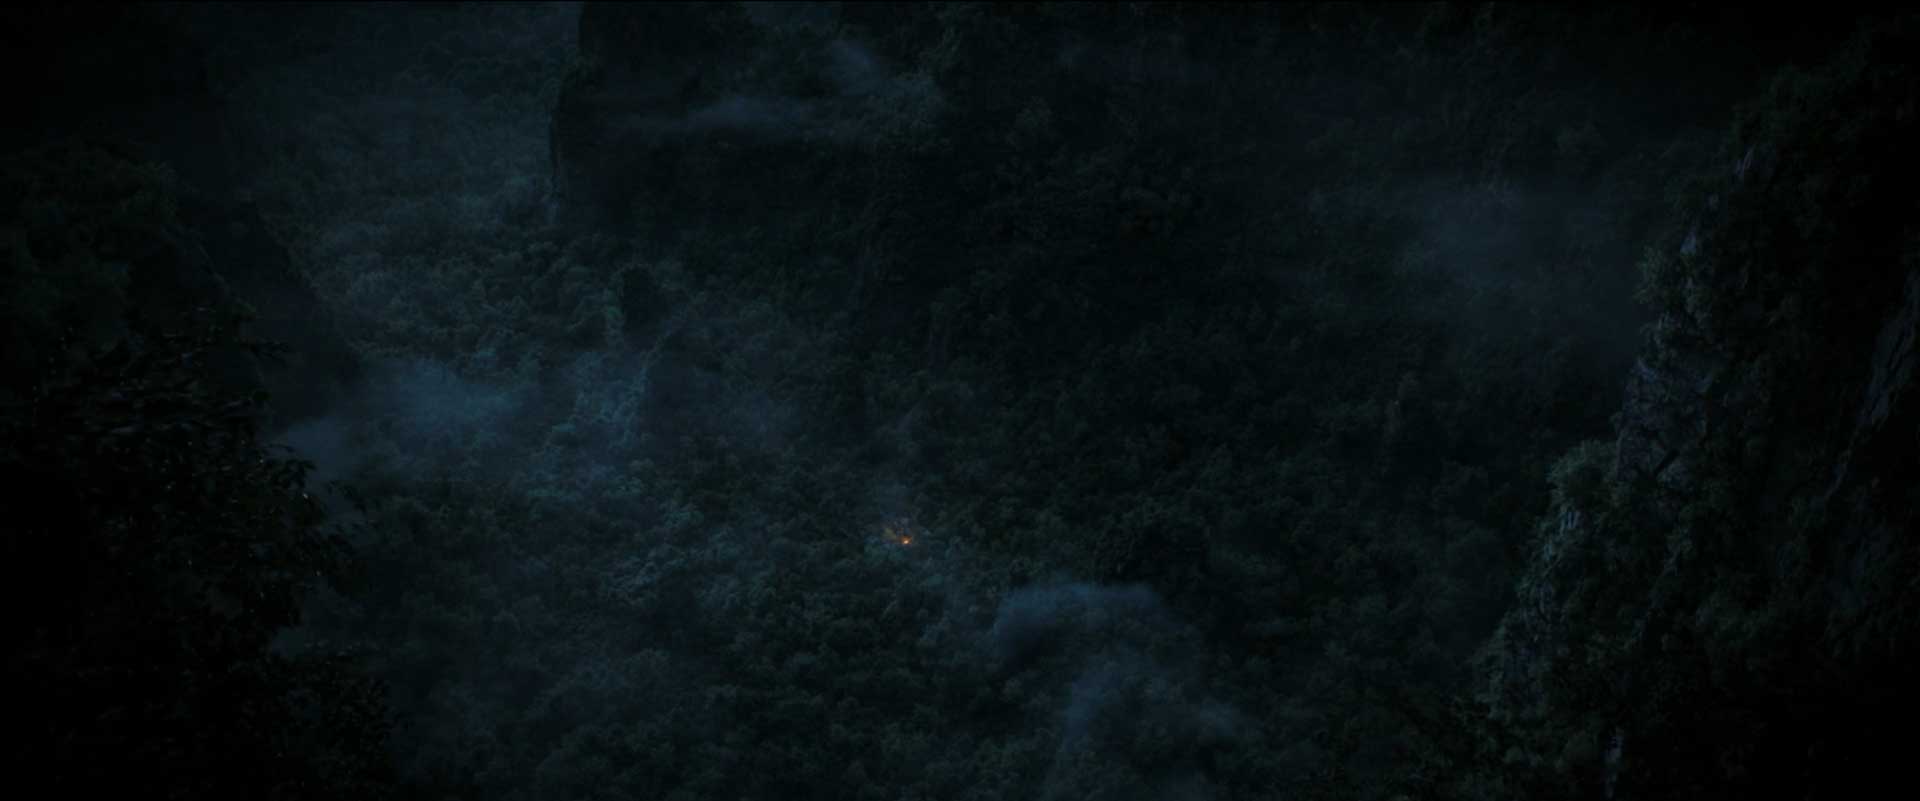 محیط تاریک جنگل در قسمت هشتم فصل اول سریال ارباب حلقه ها